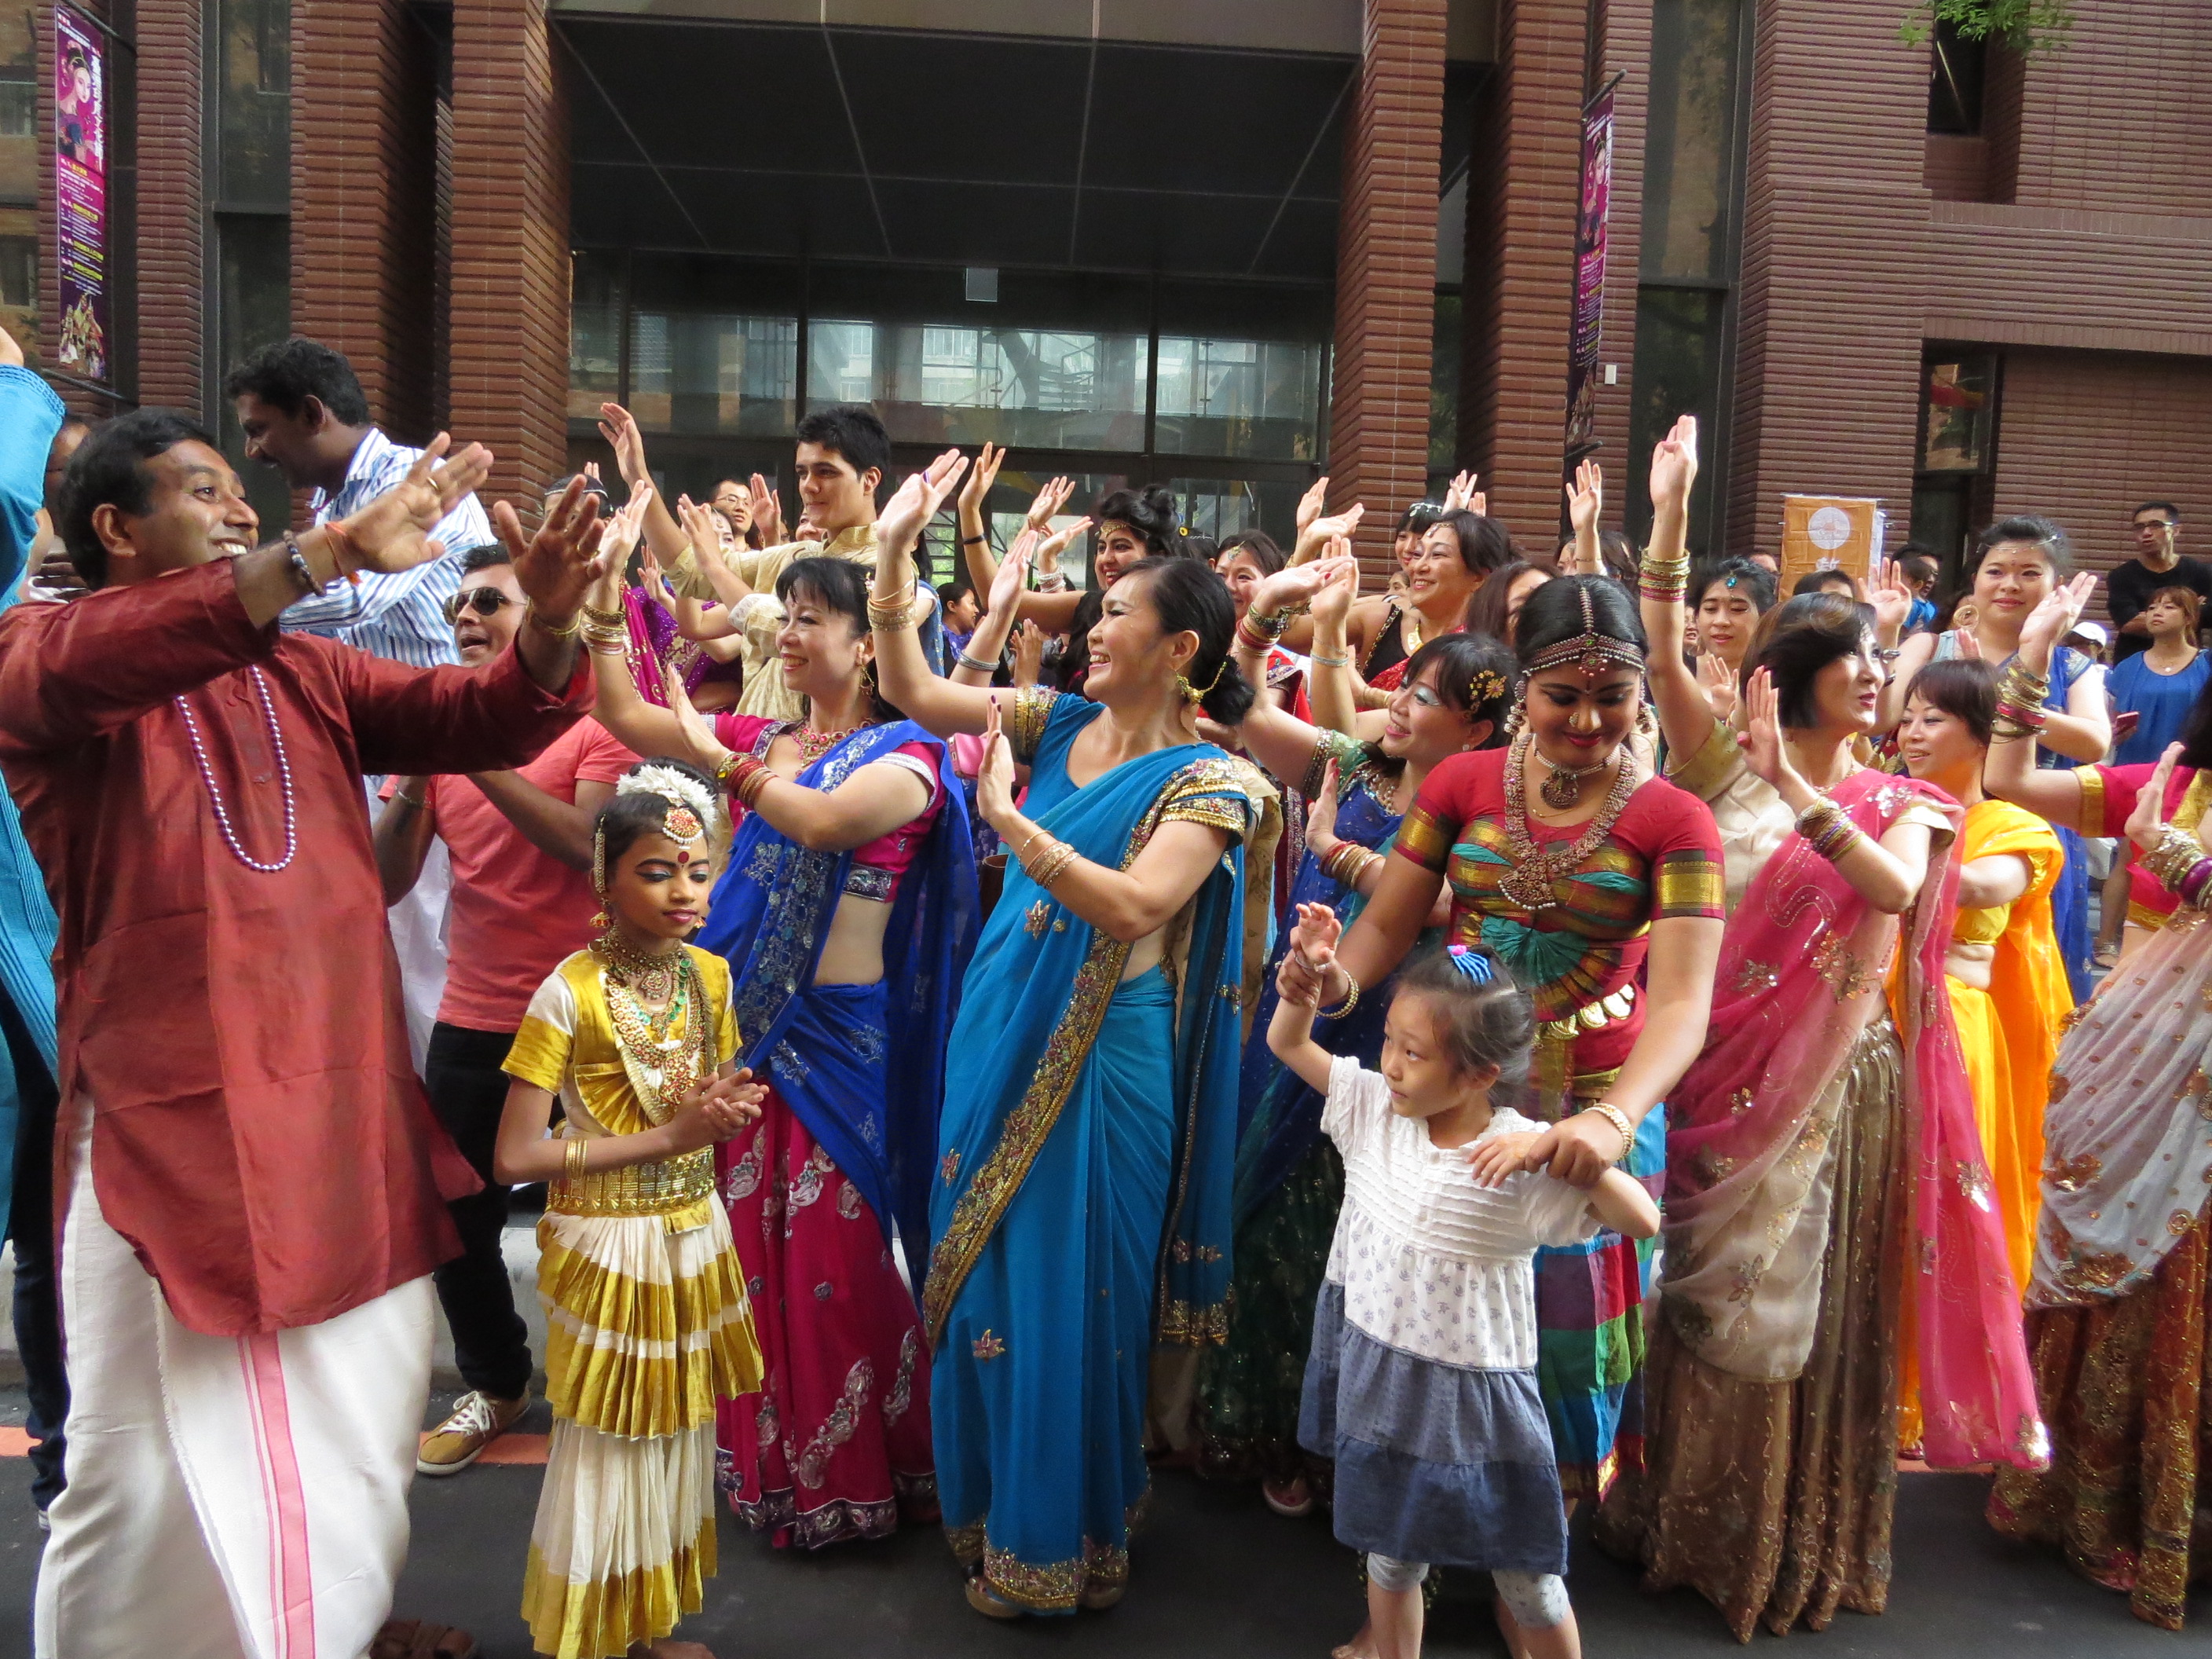 2014新北市印度文化節  印度紗麗美女踩街遊行　印度美食、藝品展示